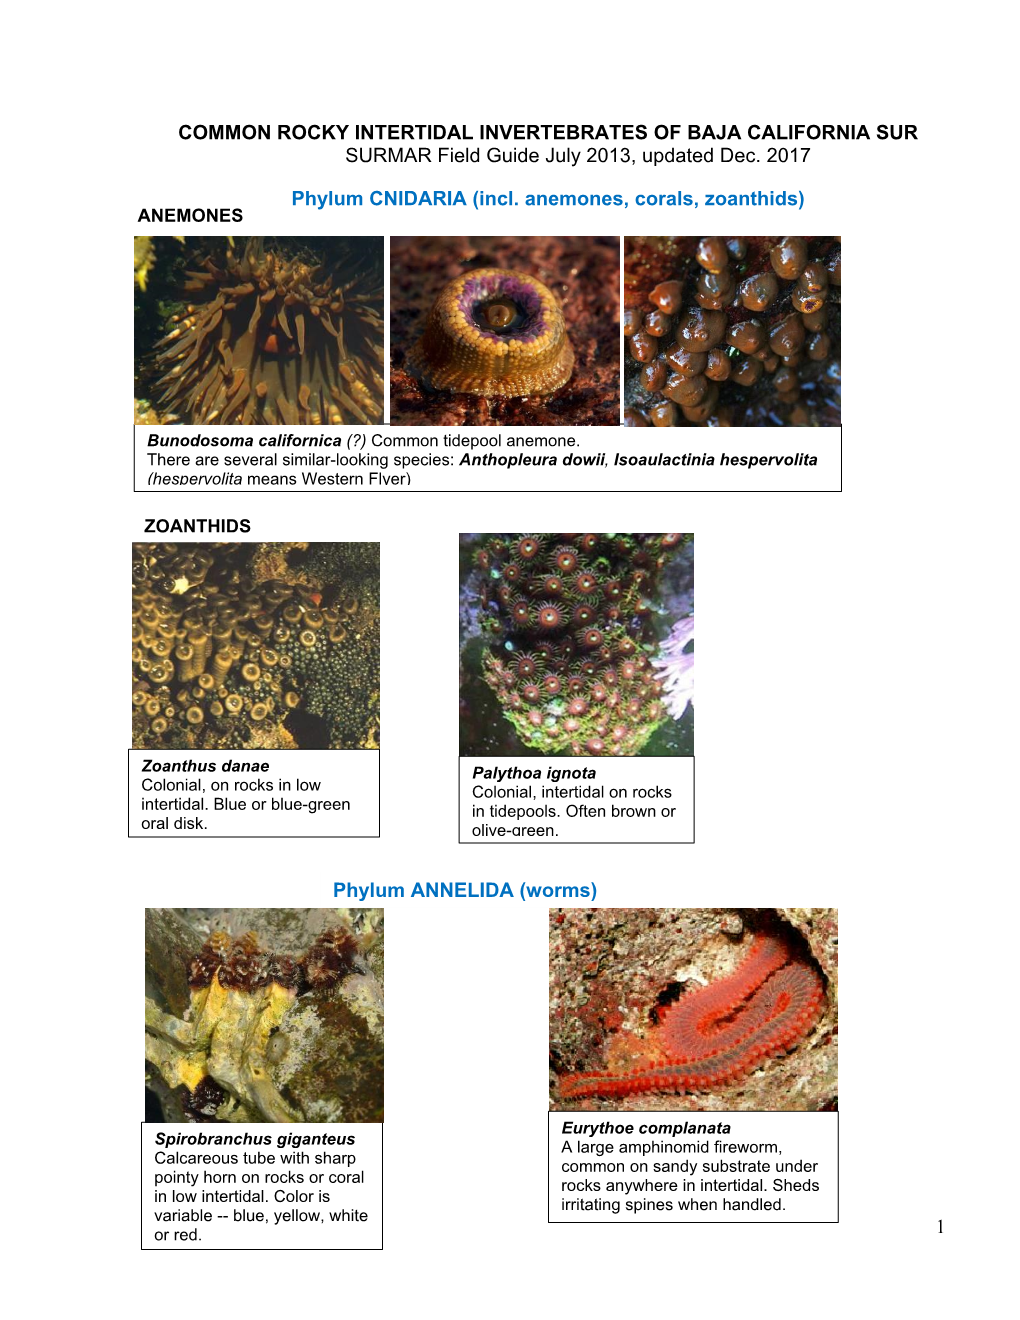 SURMAR Field Guide to Common Rocky Intertidal Invertebrates of Baja California